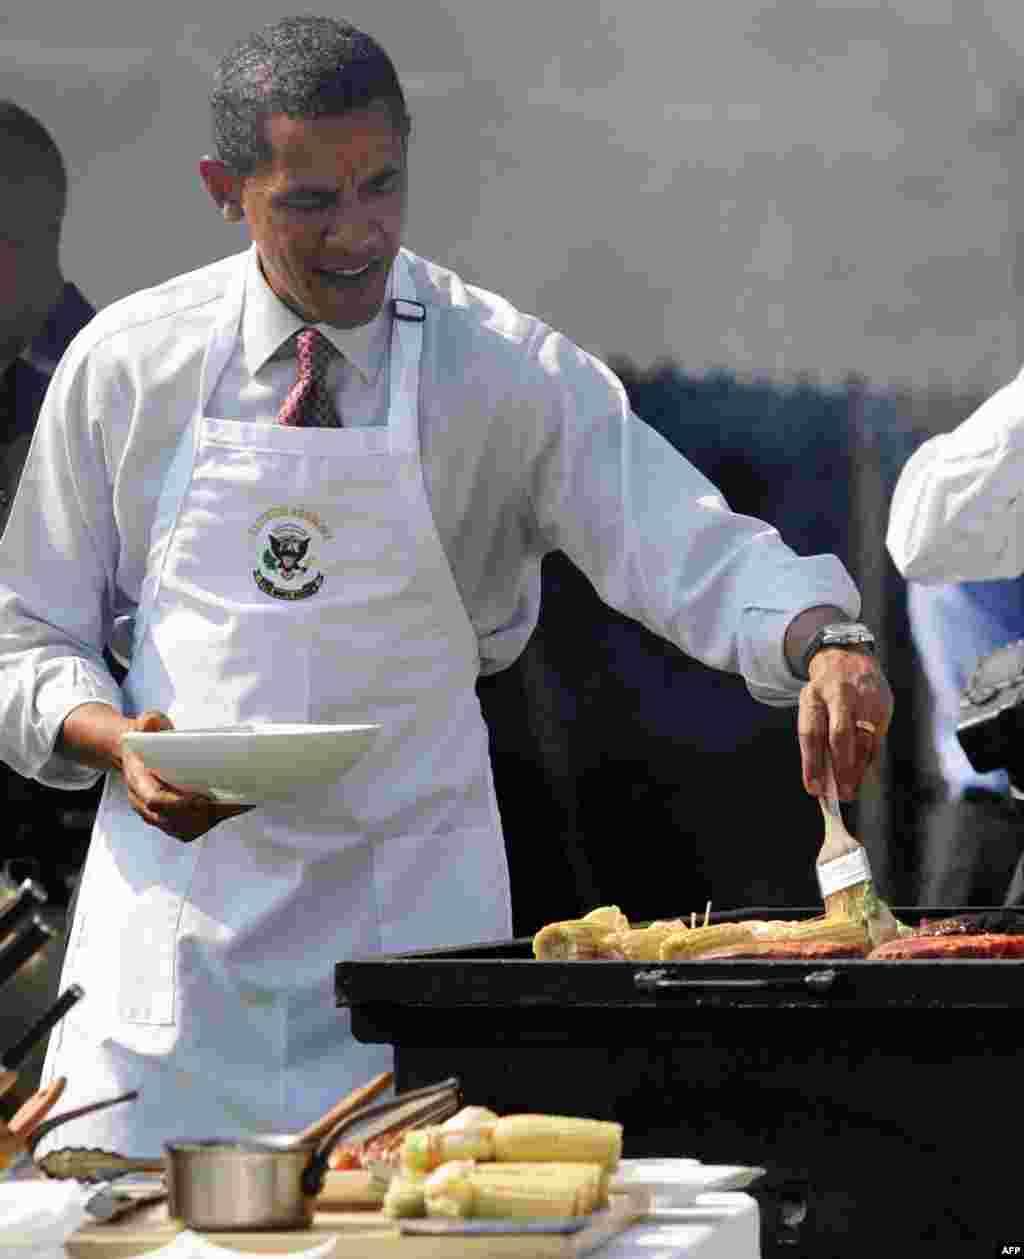 Барак Обама, президент США, иногда не прочь накормить людей едой, приготовленной собственноручно